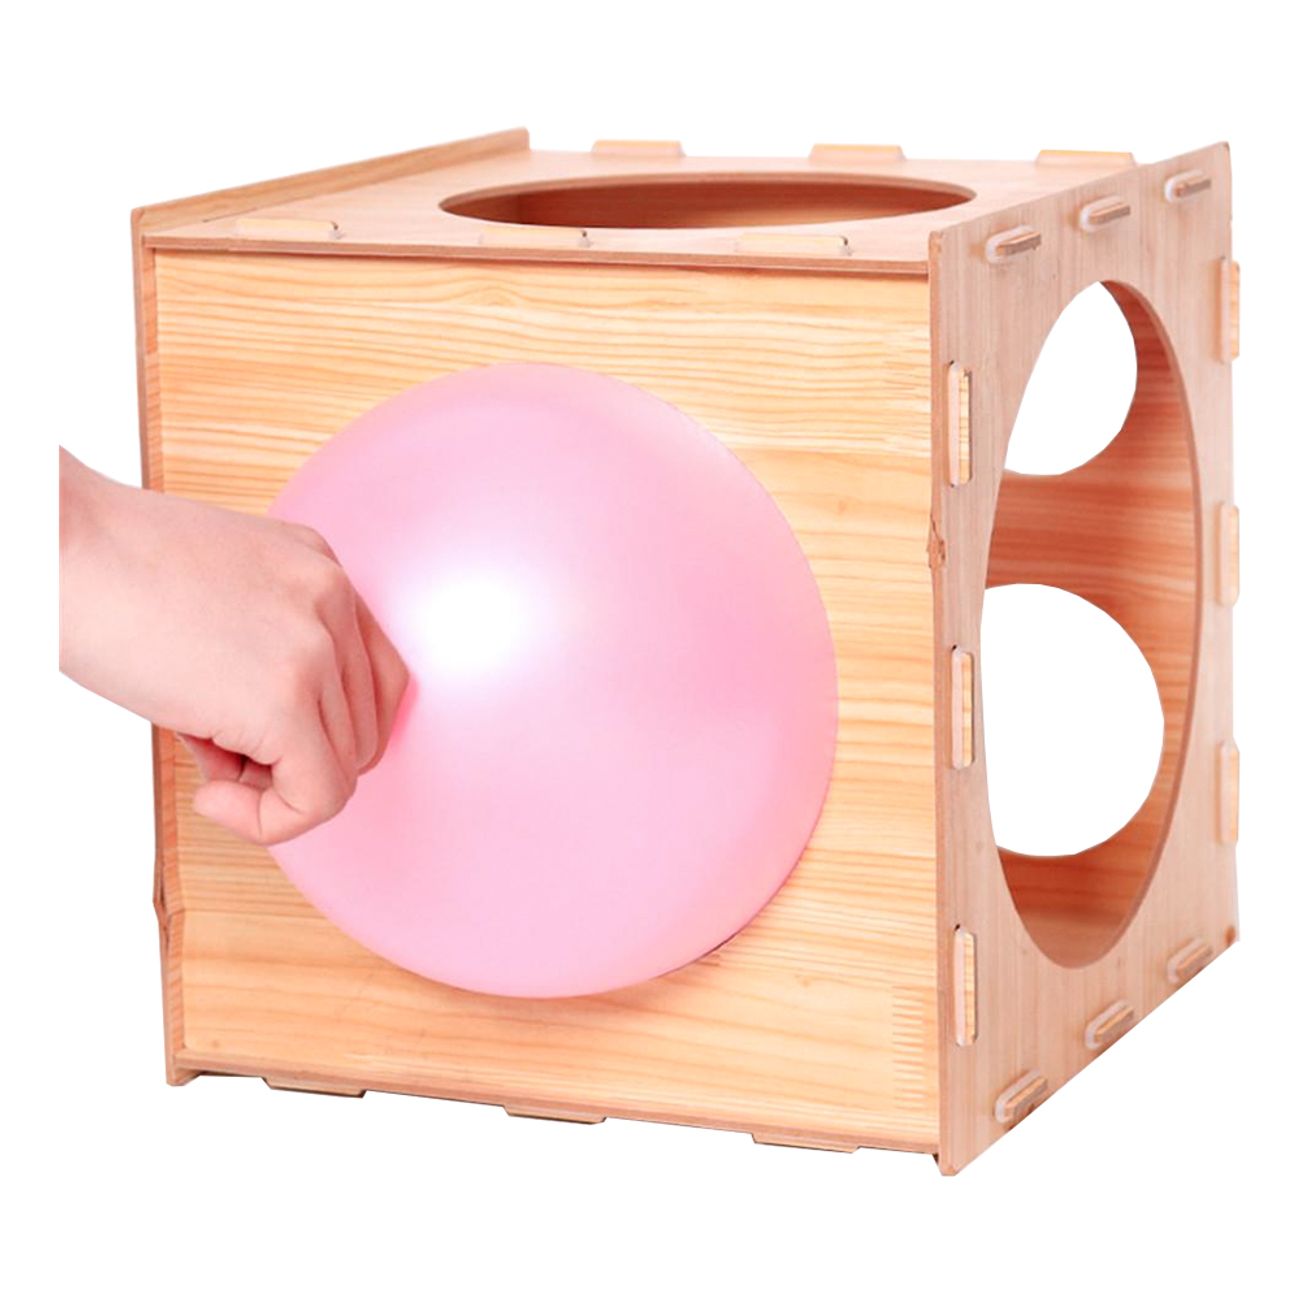 balloon-sizer-box-i-tra-82871-2